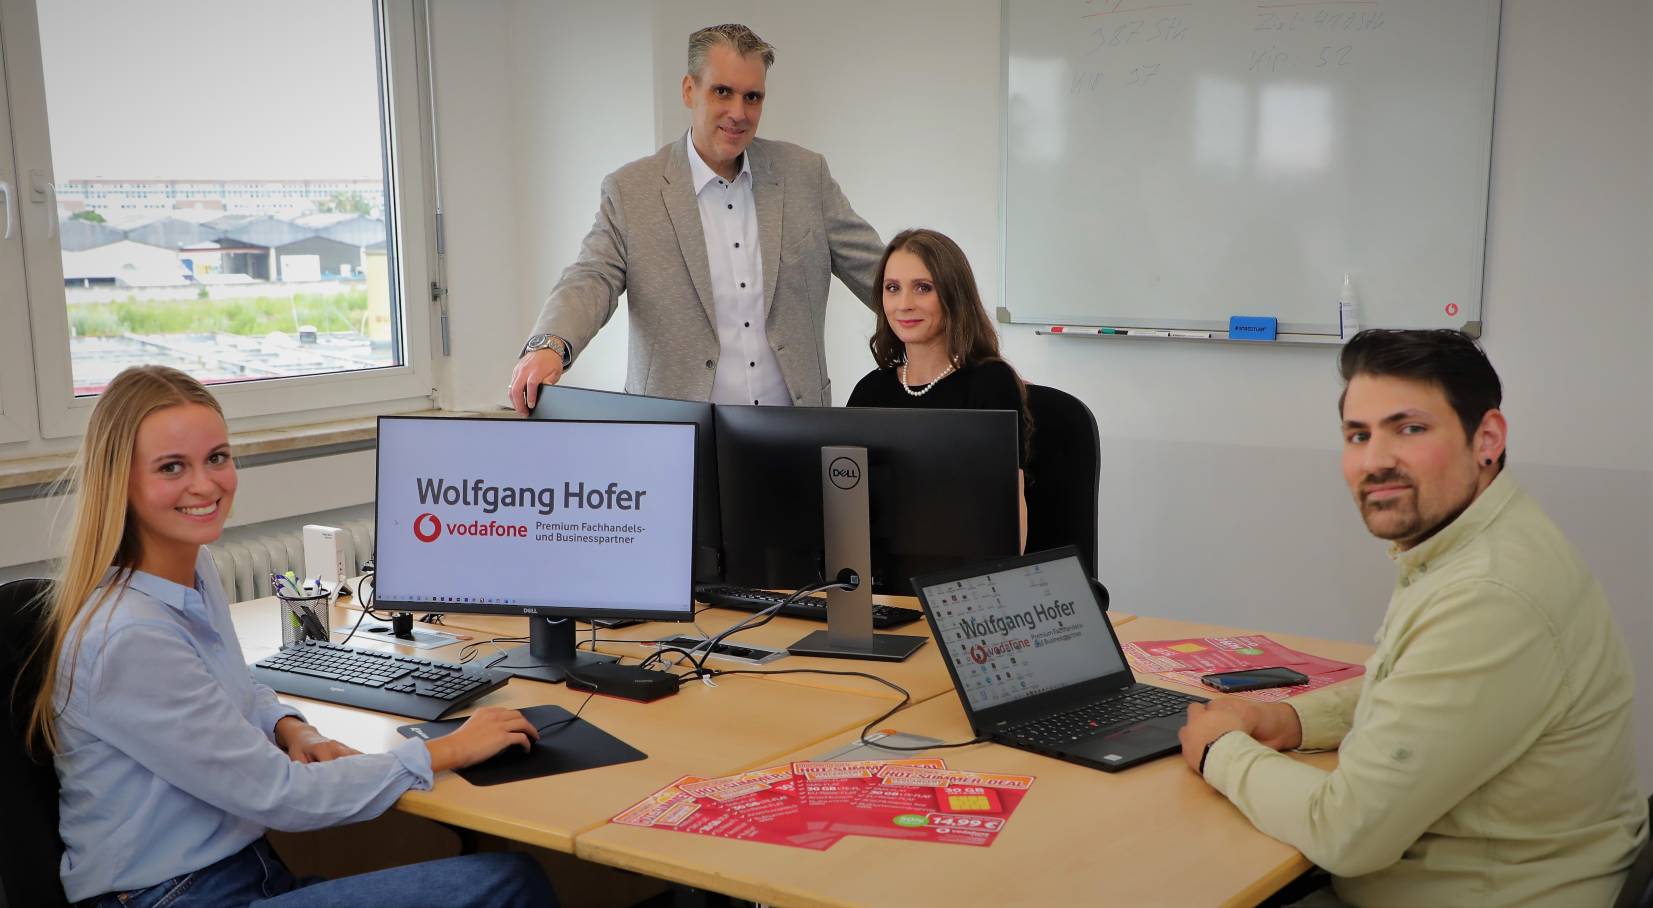 Wolfgang Hofer Vodafone Nürnberg Olesja Hofer Business Team